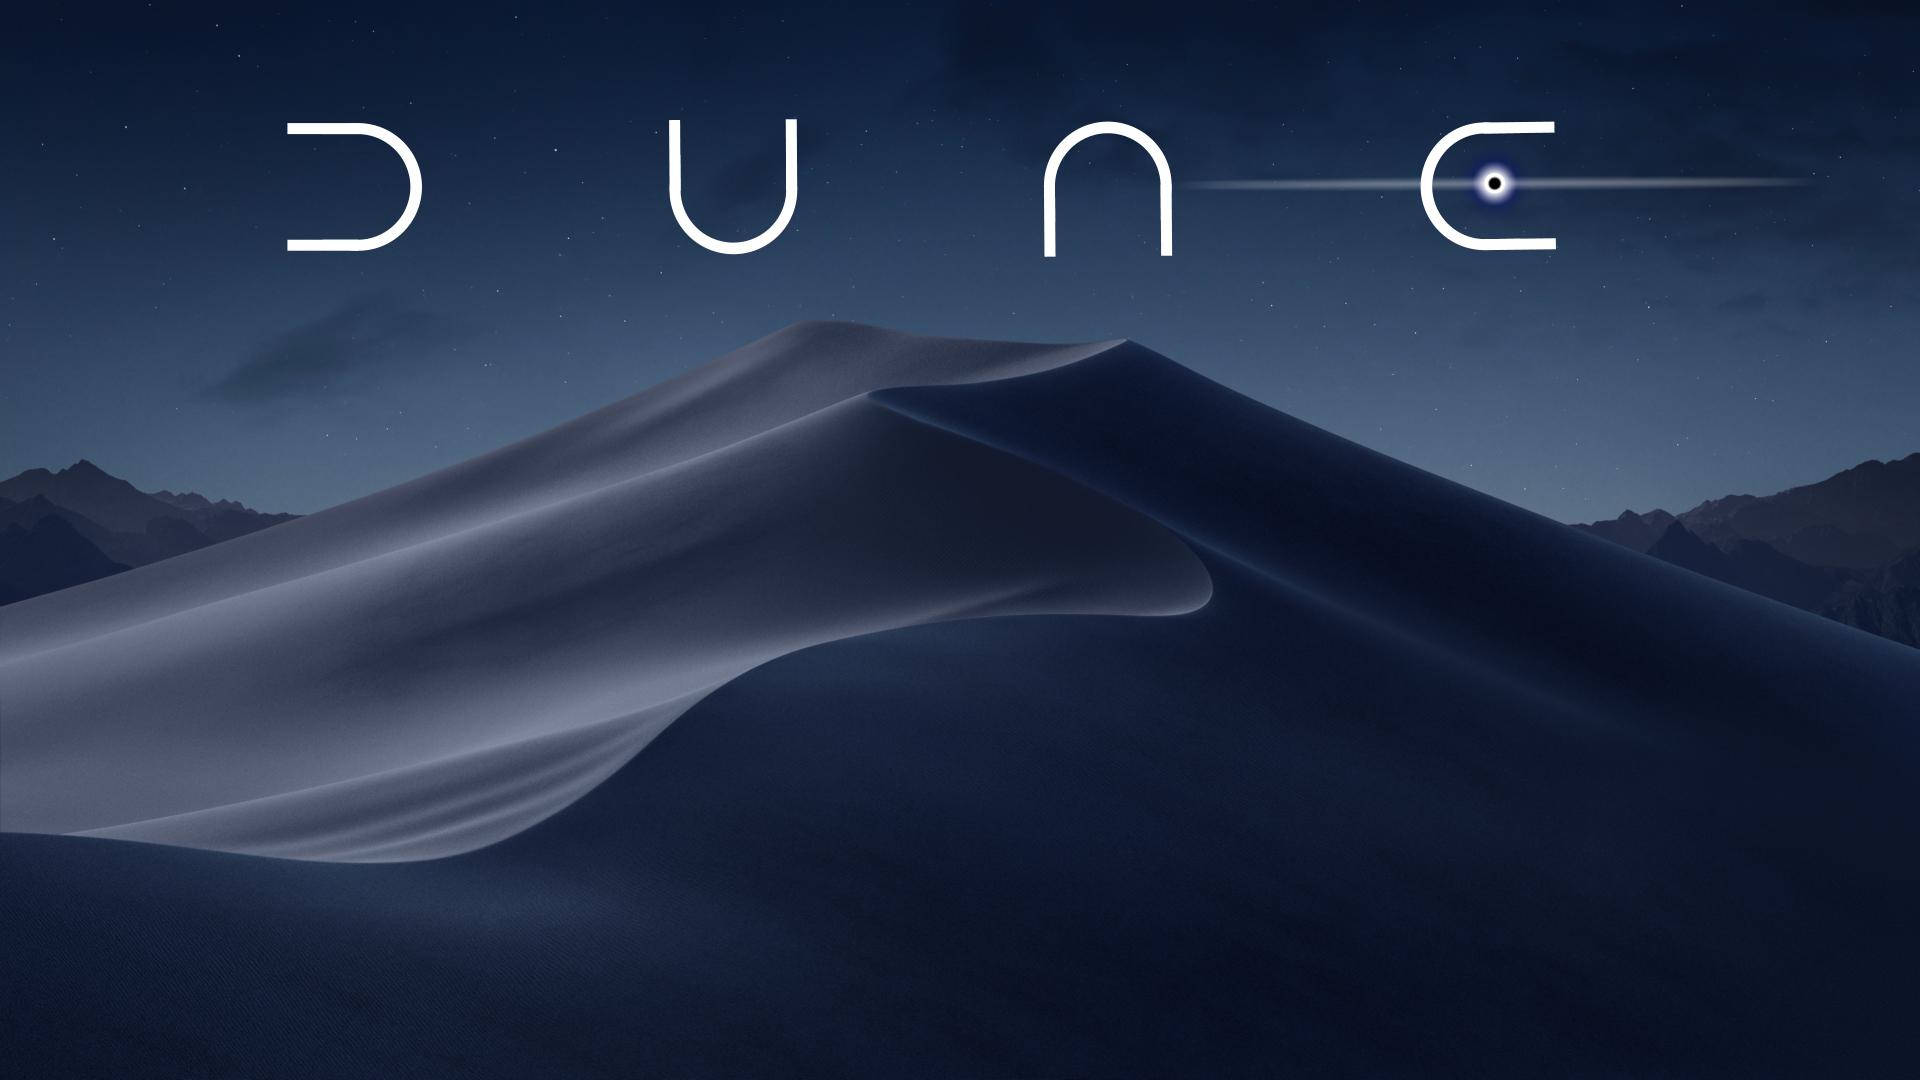 Dune 2021 Sand Desert Poster Background